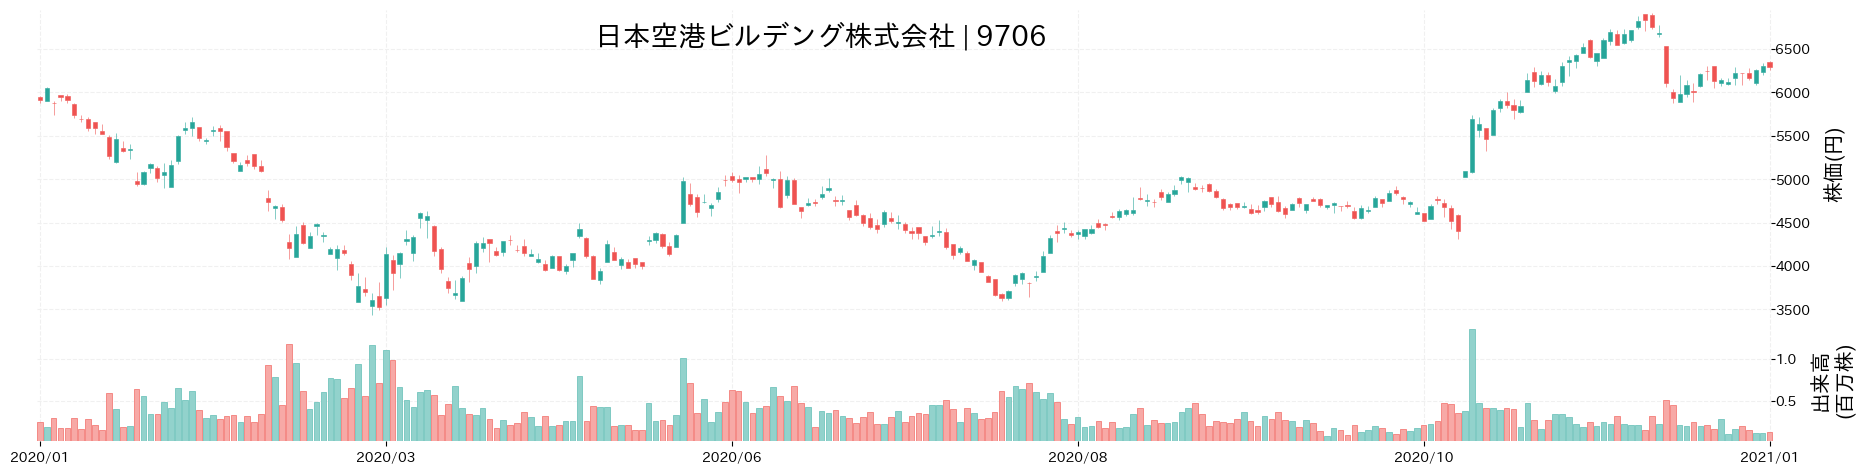 日本空港ビルデングの株価推移(2020)